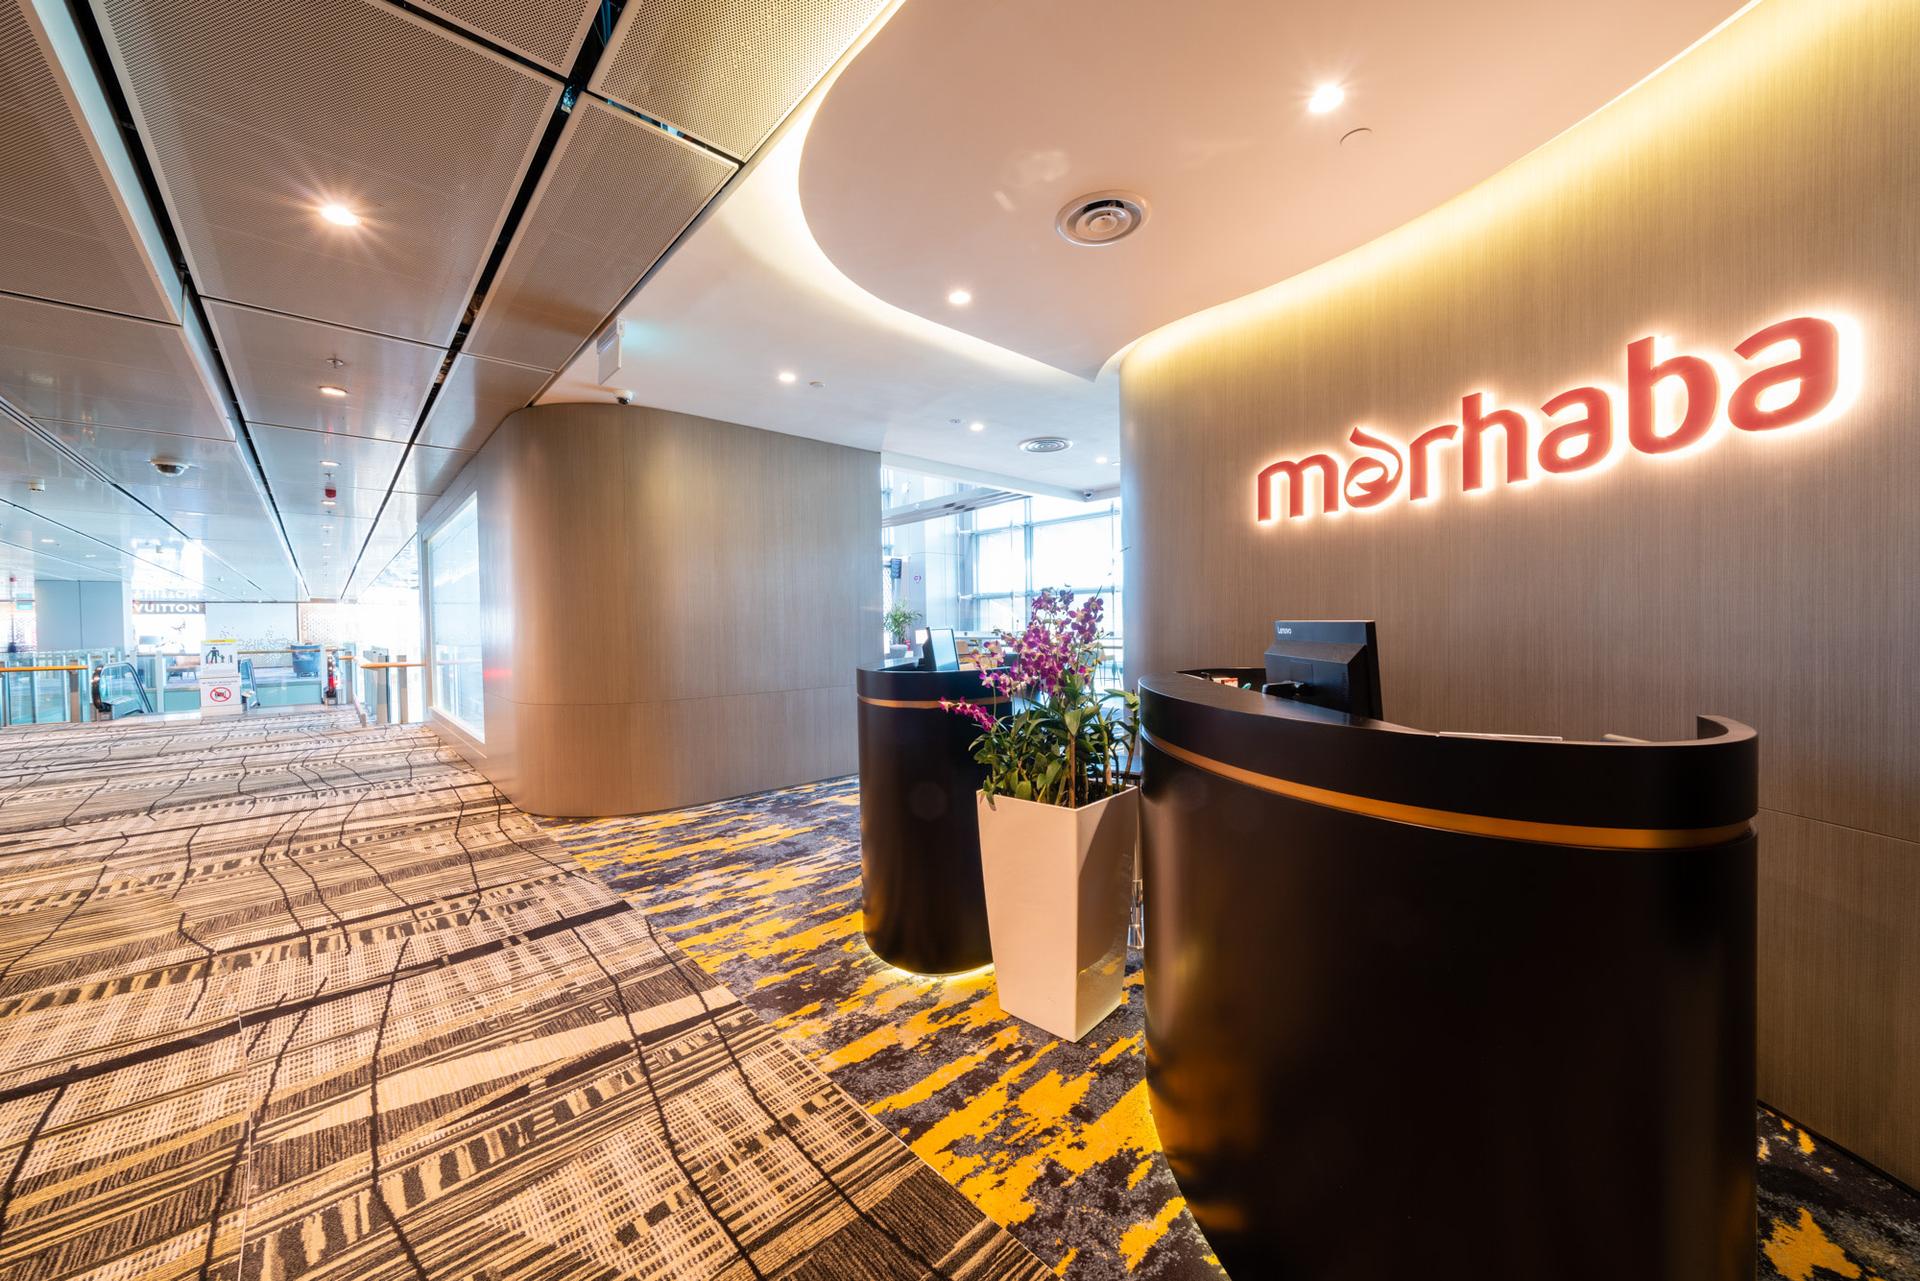 Marhaba Lounge image 34 of 57